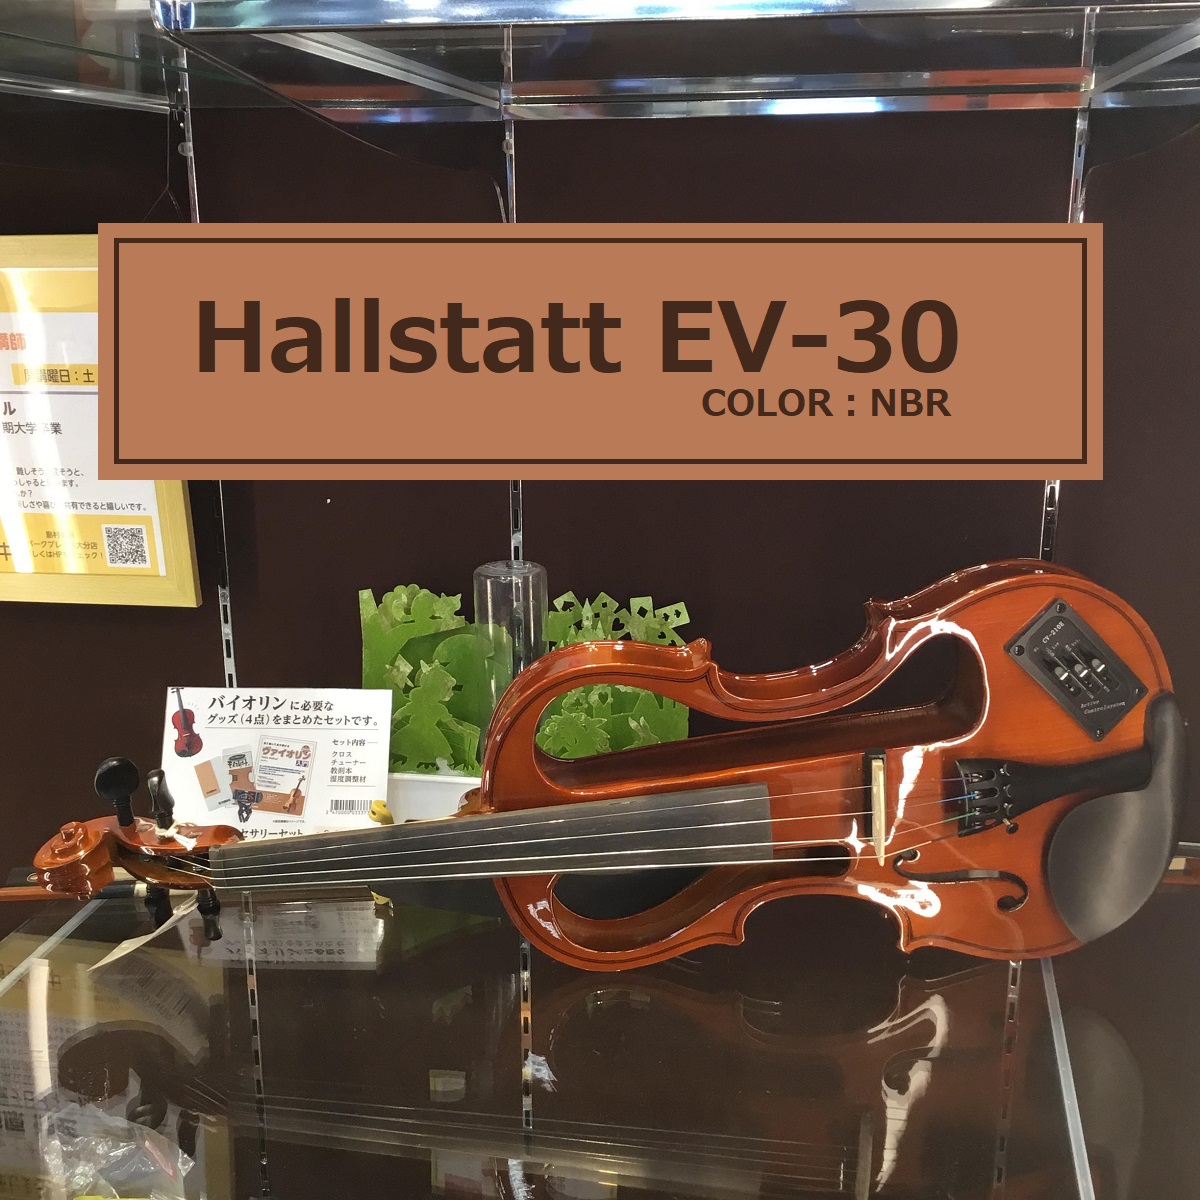 バイオリン】 Hallstatt EV-30 NBR(ナチュラルブラウン) 入荷致しまし 